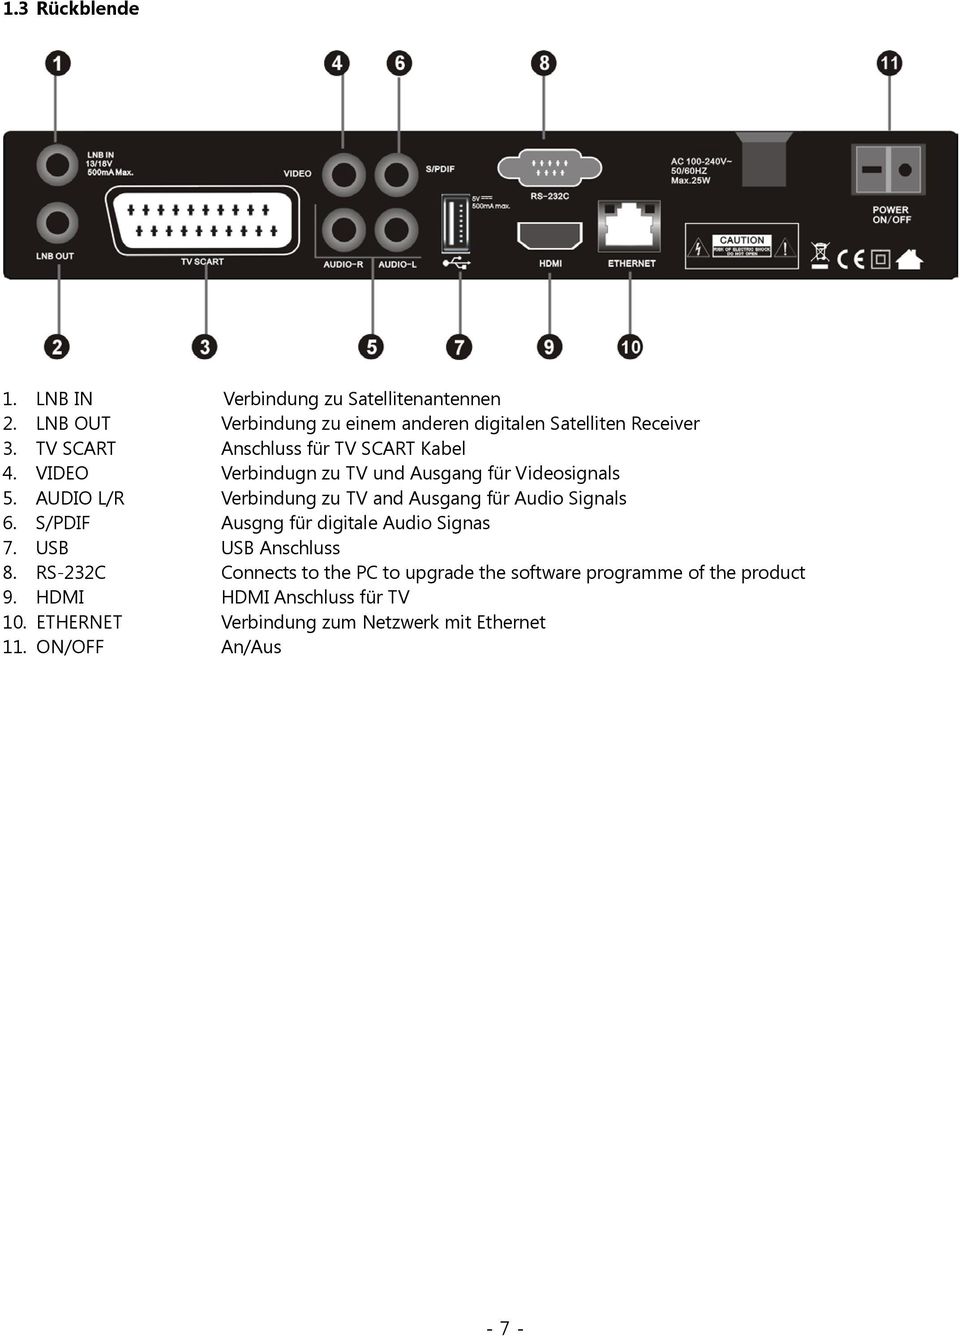 AUDIO L/R Verbindung zu TV and Ausgang für Audio Signals 6. S/PDIF Ausgng für digitale Audio Signas 7. USB USB Anschluss 8.